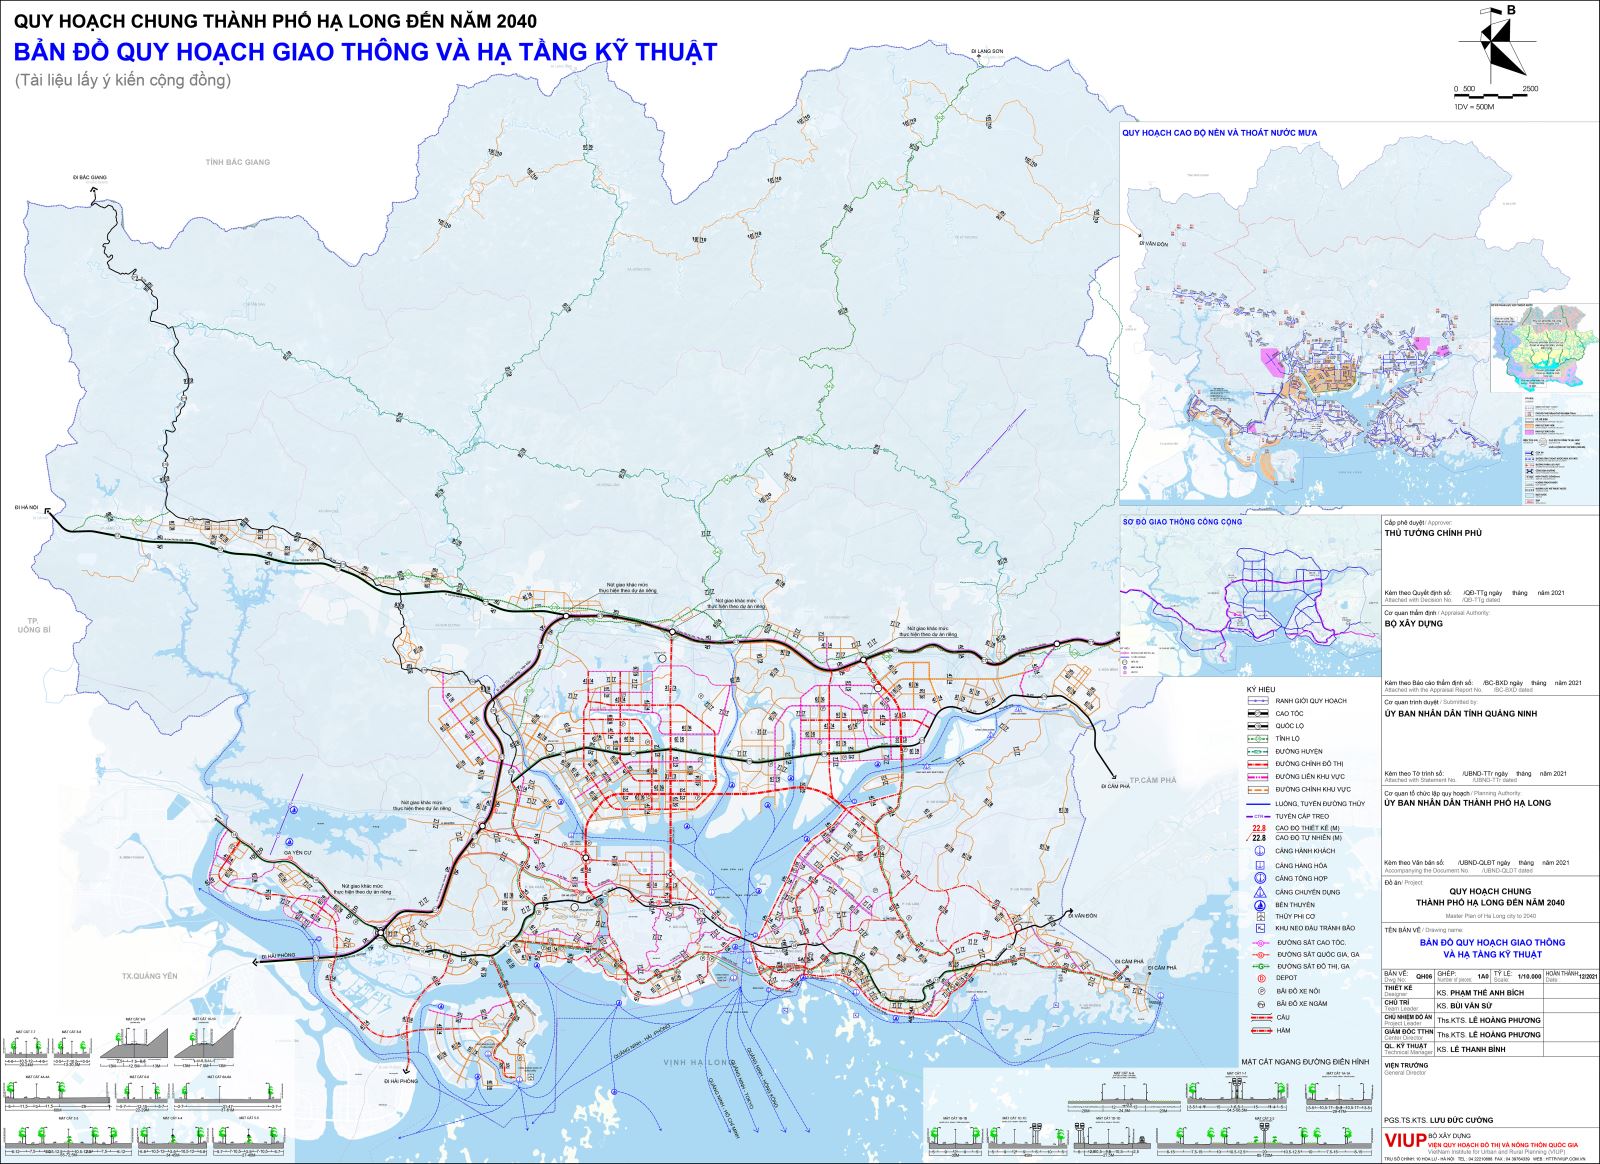 Sơ đồ định hướng phát triển giao thông và hạ tầng kĩ thuật quy hoạch chung thành phố Hạ Long đến năm 2040 